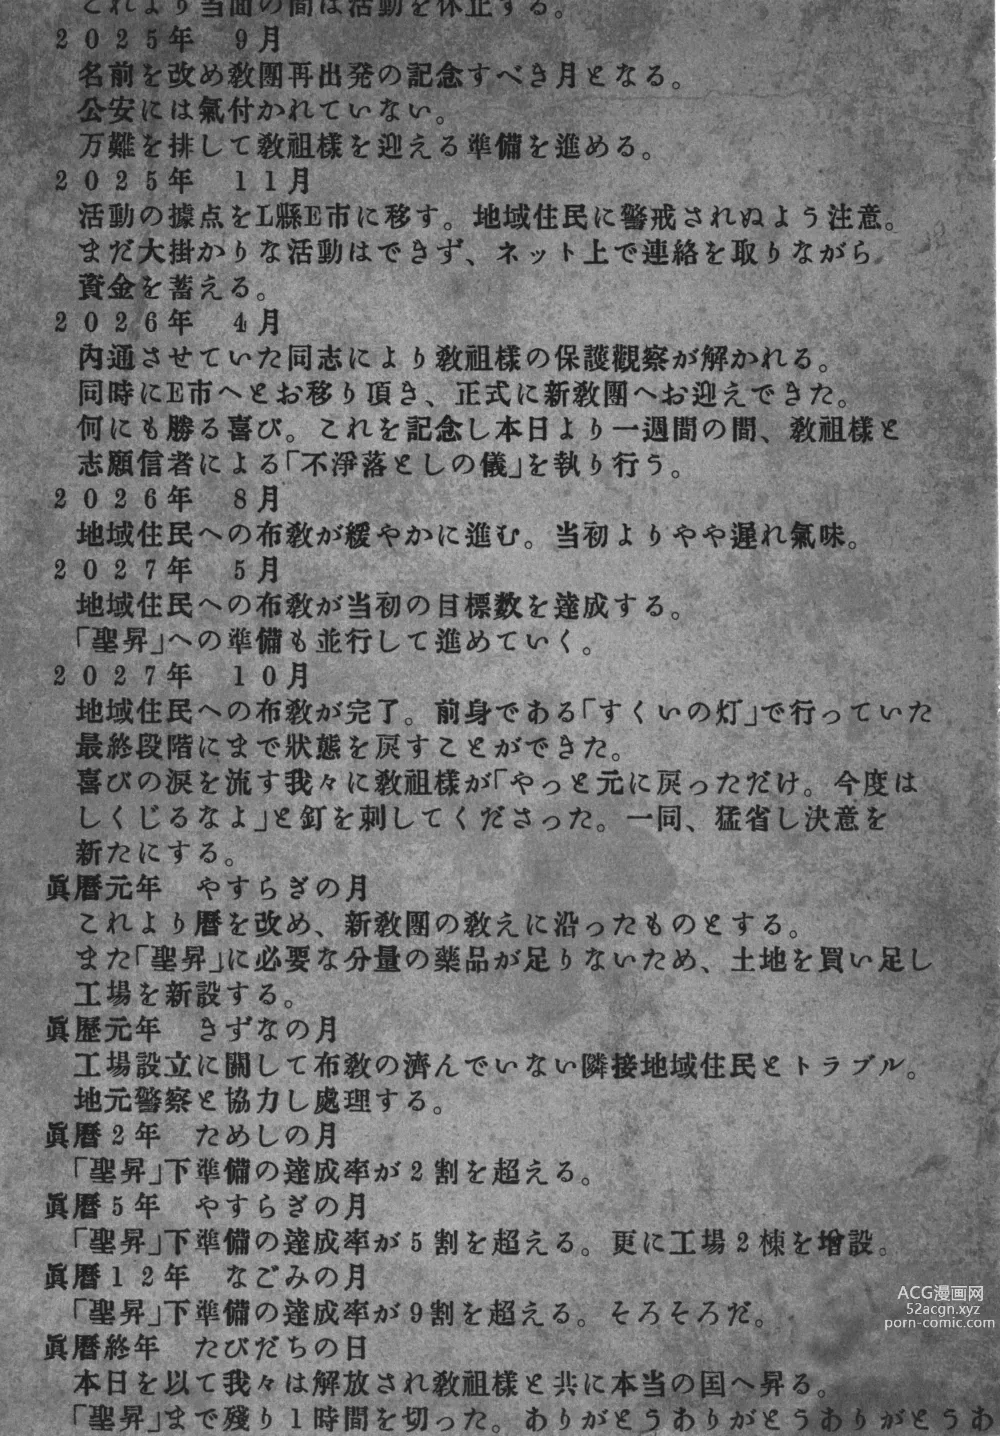 Page 214 of manga Kami-sama no Tsukurikata